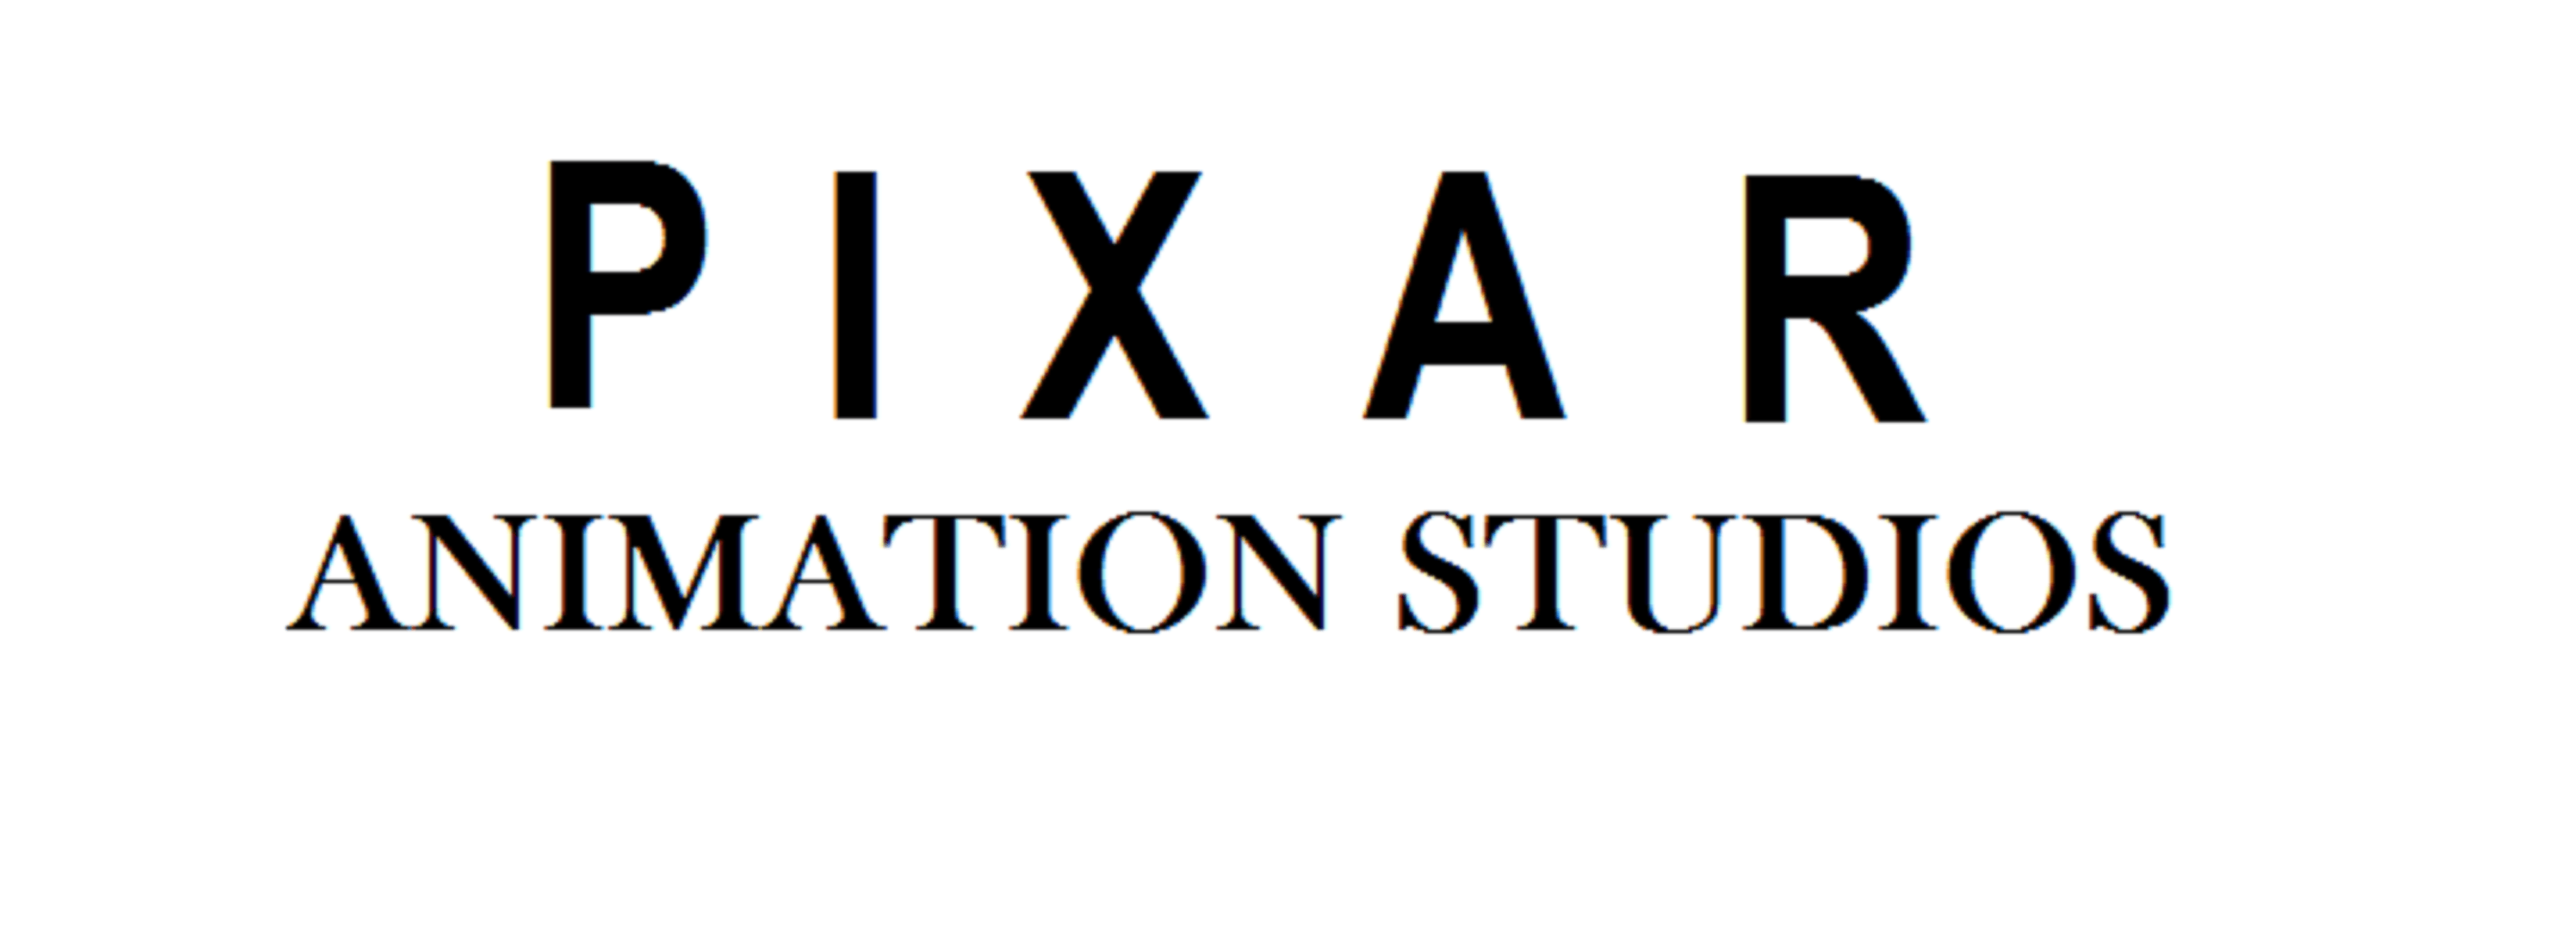 Pixar Logo - File:Pixar logo (2).png - Wikimedia Commons